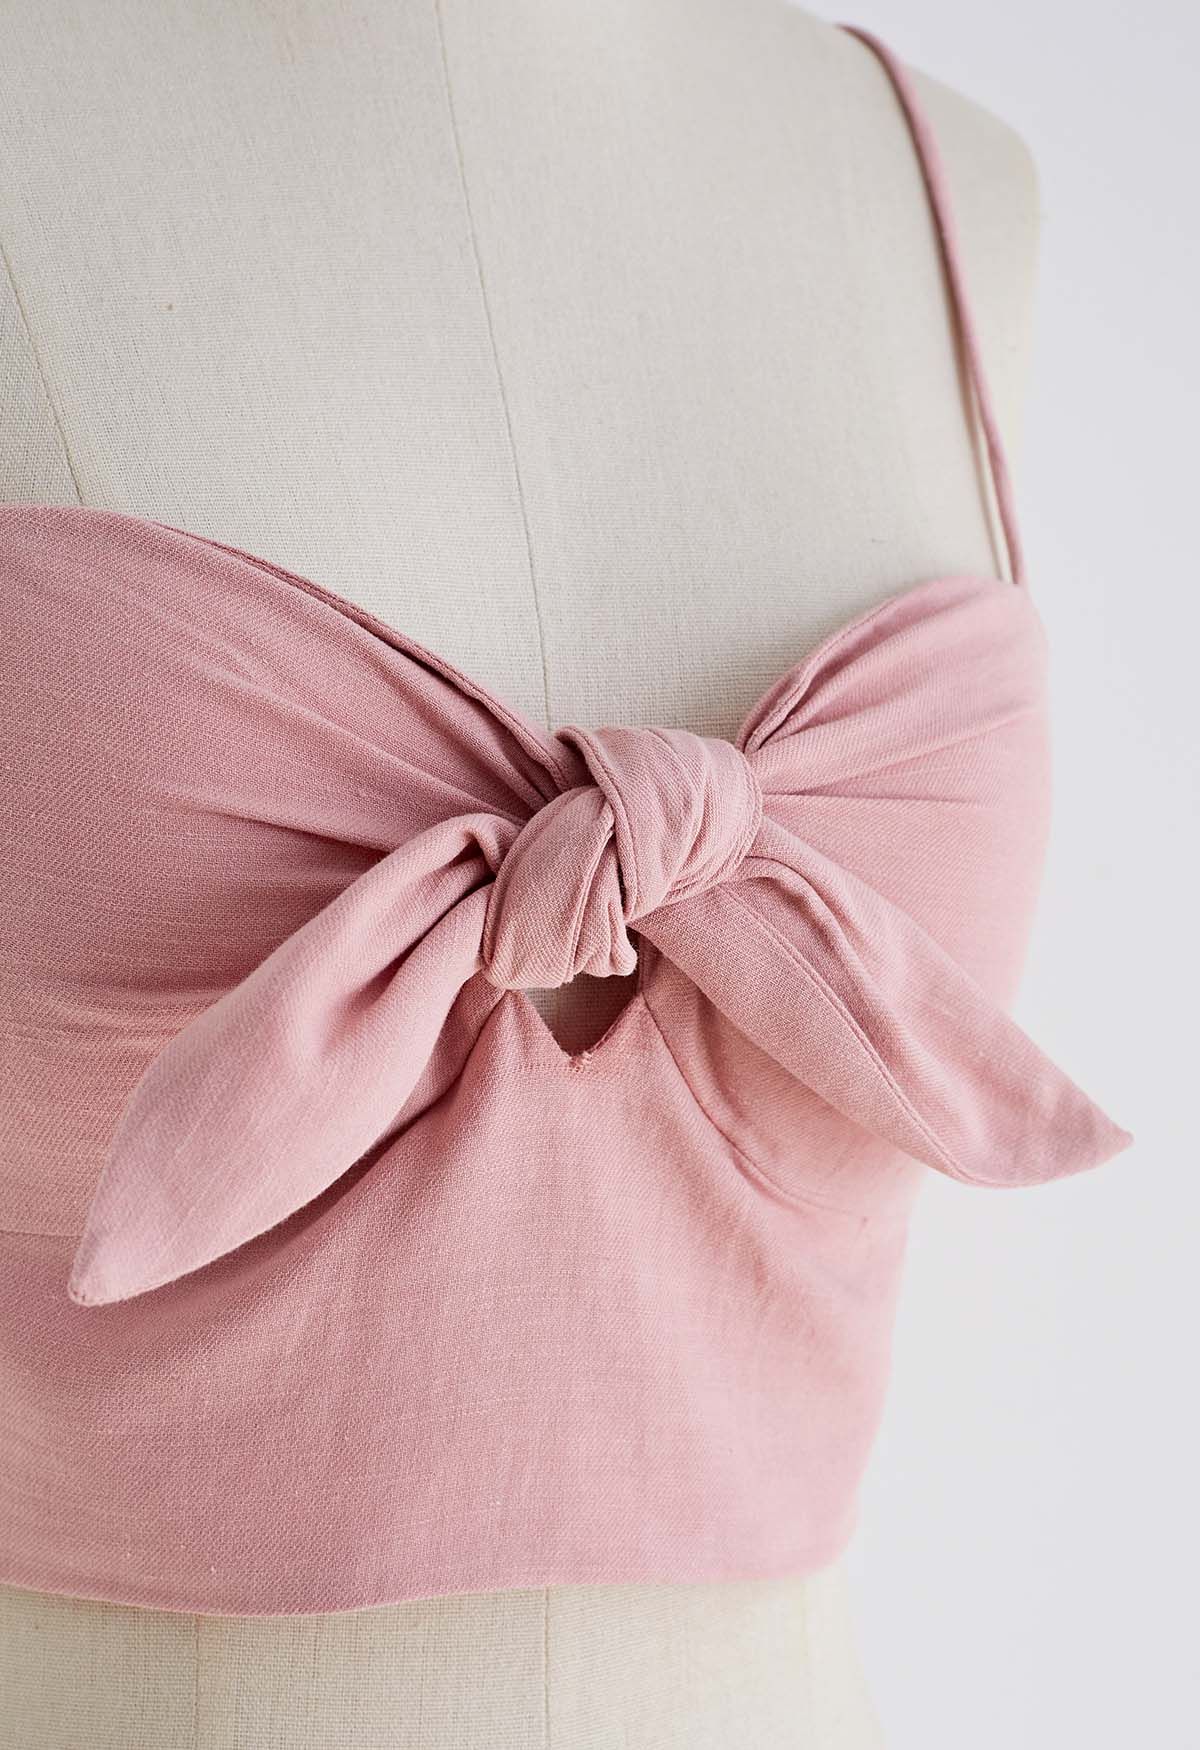 بلوزة قصيرة مزينة بعقدة وربطة عنق باللون الوردي